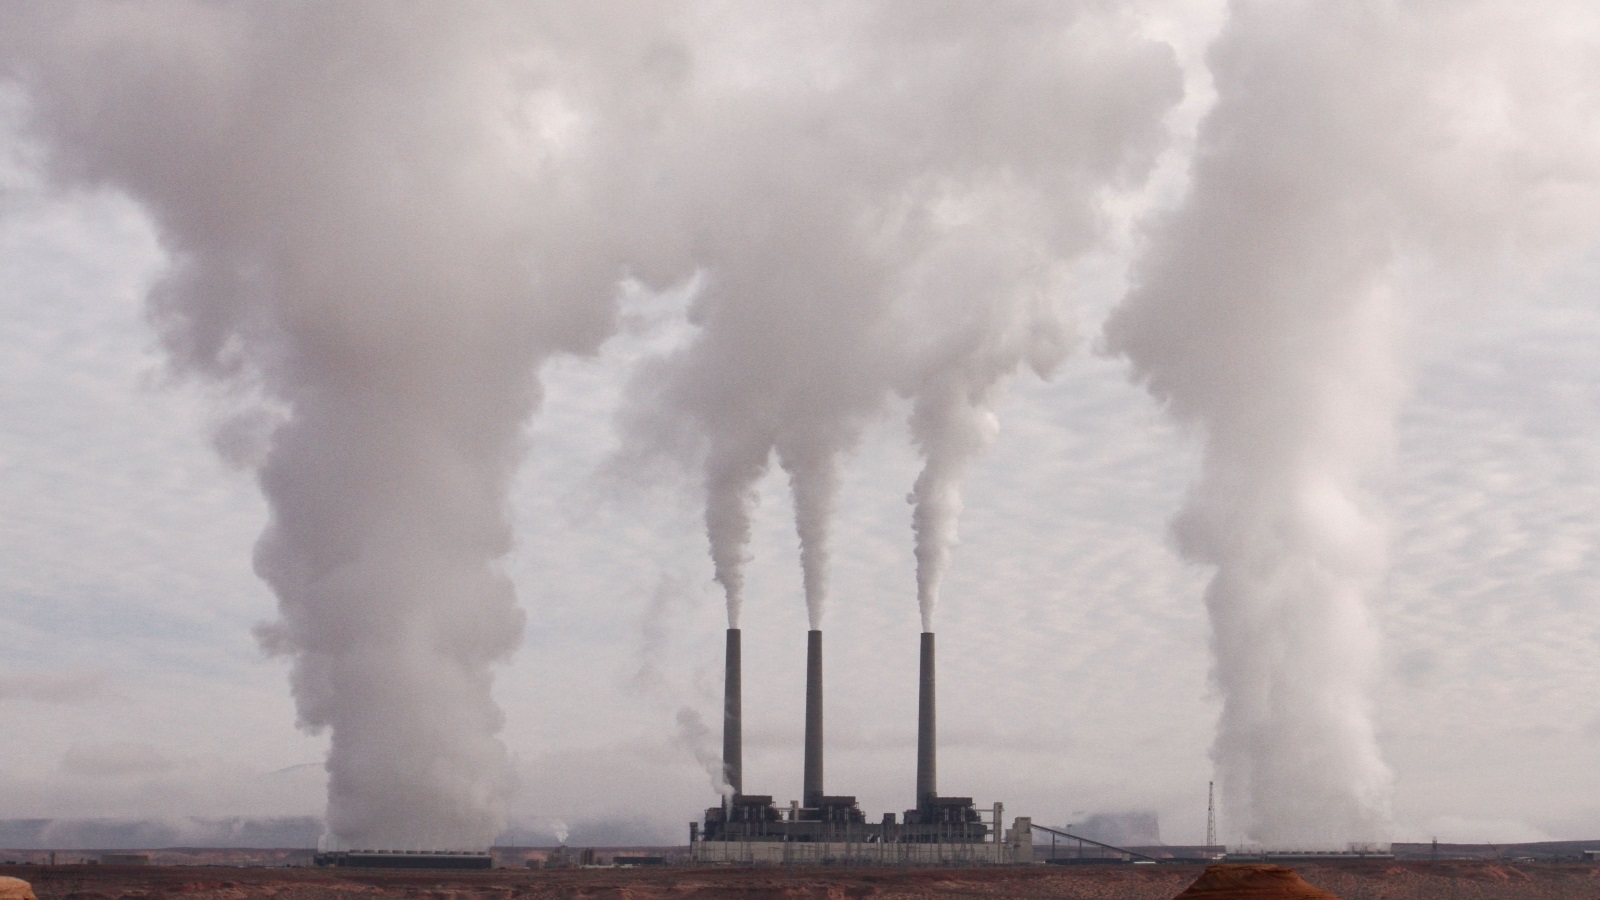 تعتبر الصناعات التي تعتمد على الوقود الأحفوري كالفحم، النفط والغاز الطبيعي كمصدر أساسي للطاقة من أكبر مصادر الملوثات الهوائية، إذ ينطلق منها عند احتراقها كميات كبيرة جداً من الغازات السامة